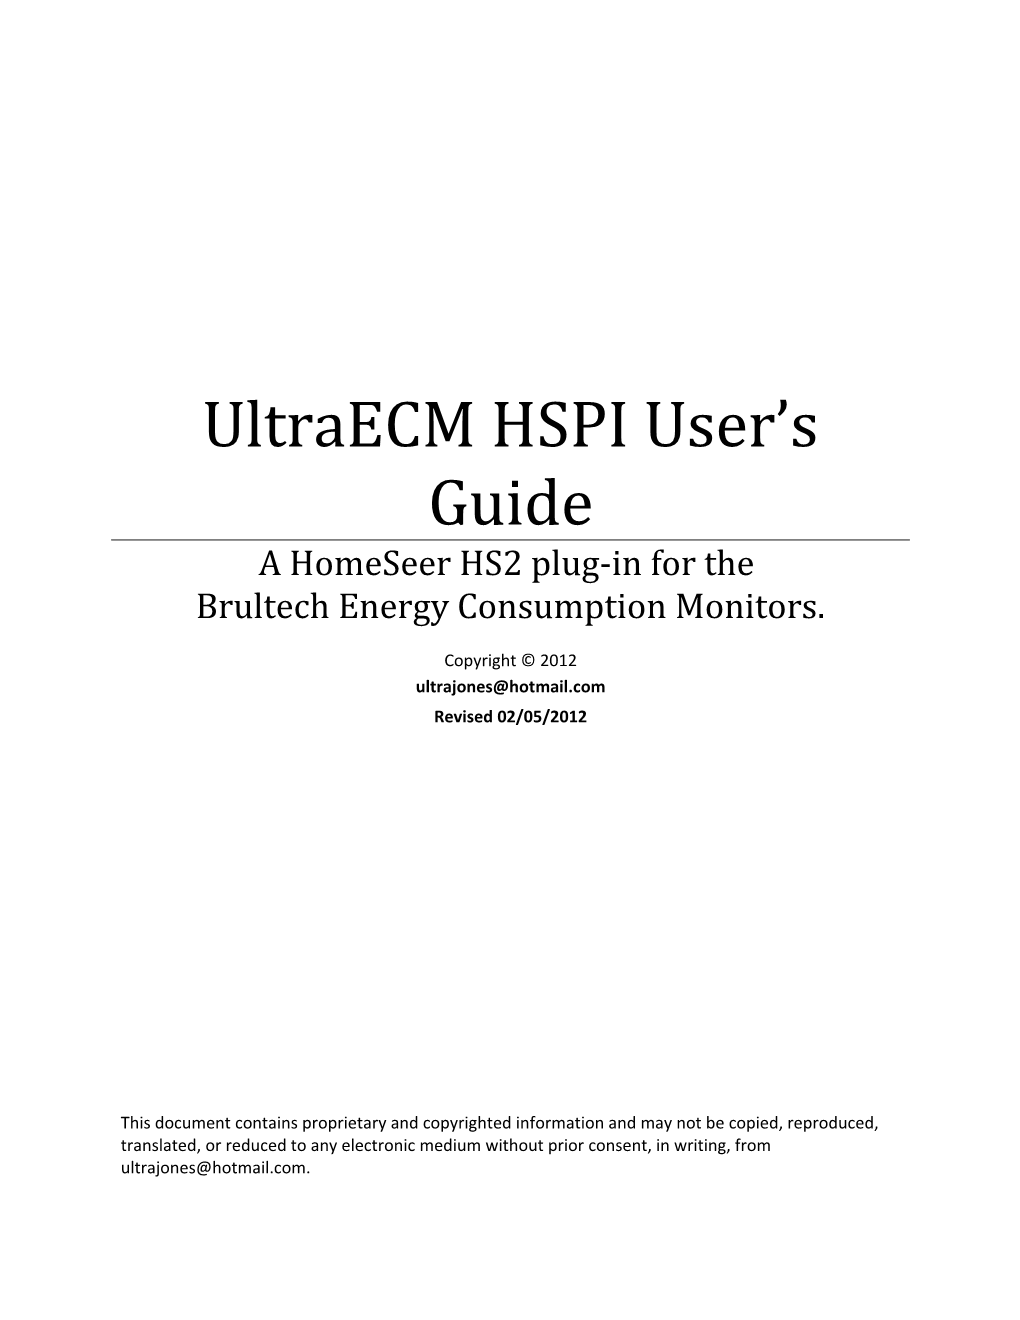 Ultramon HSPI User S Guide s1